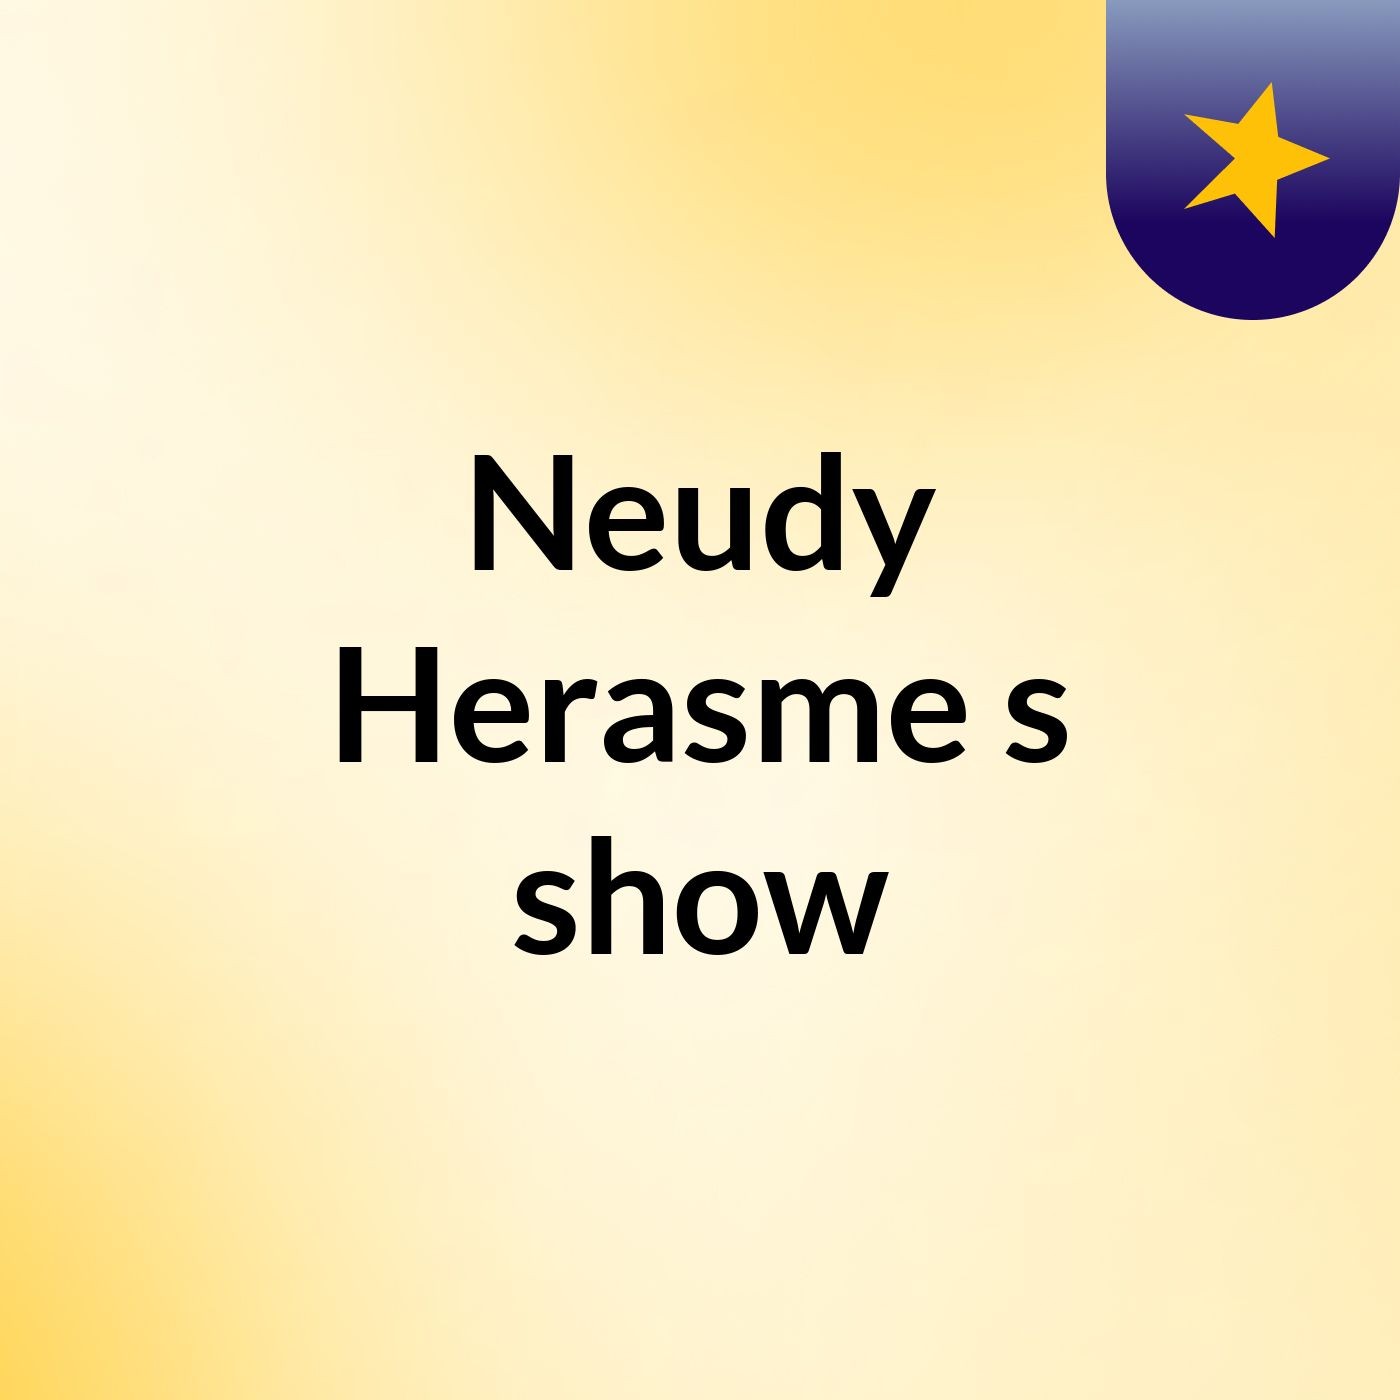 Neudy Herasme's show